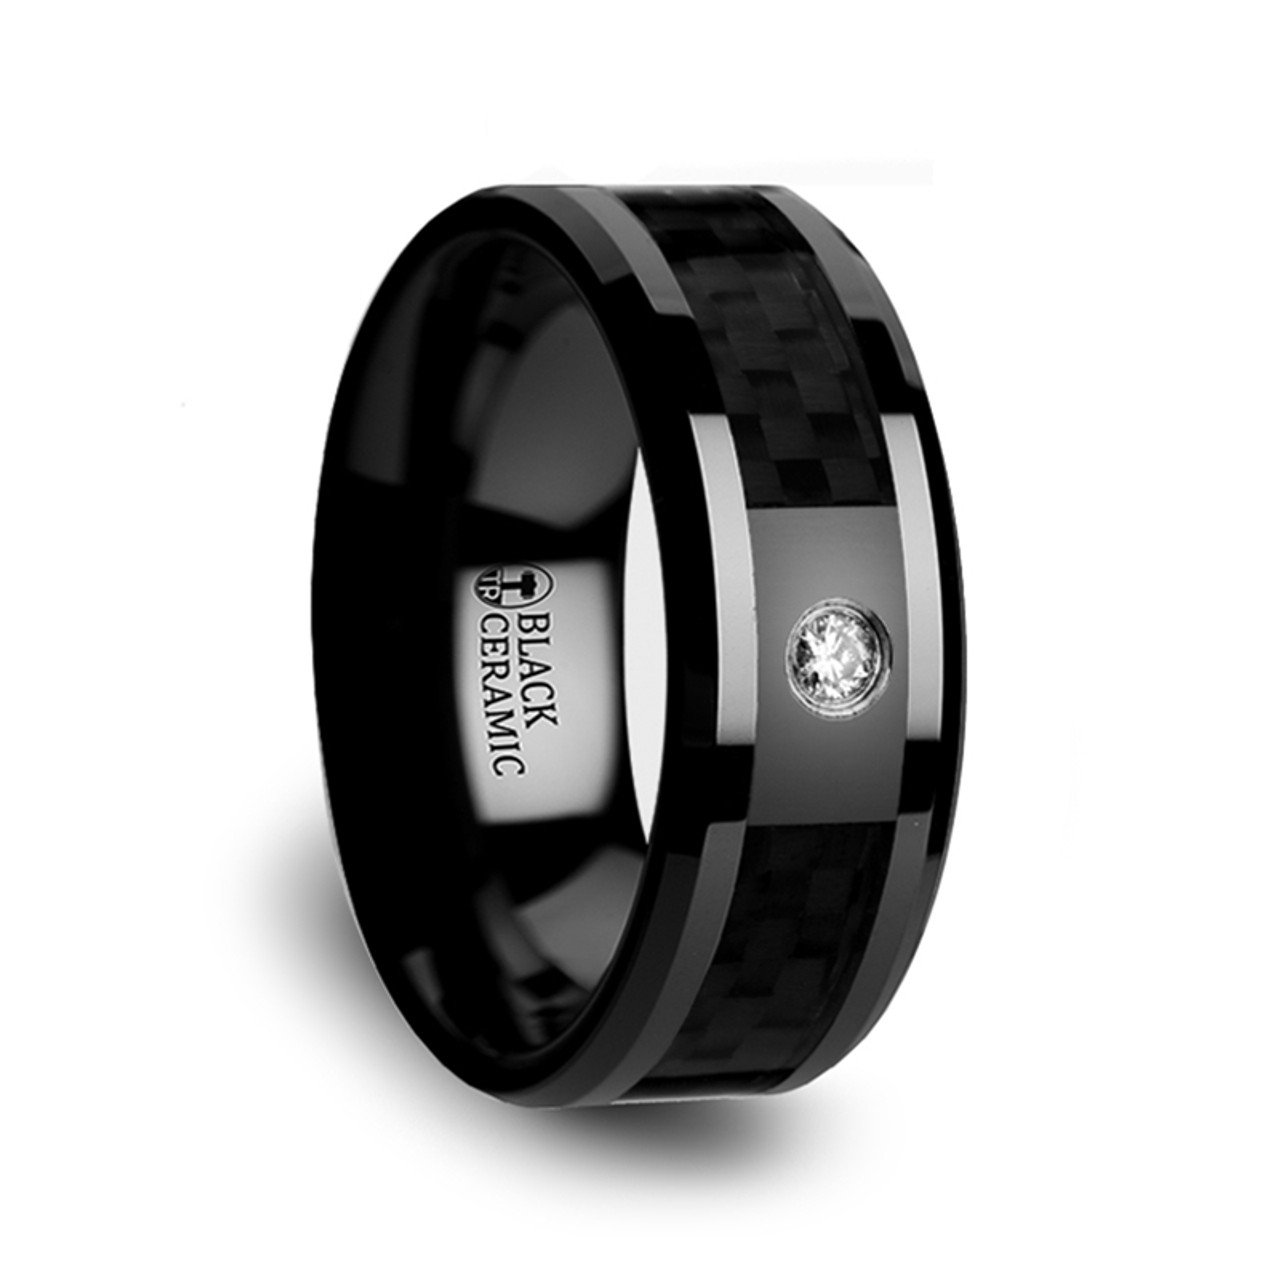 Кольцо керамика. Черный Даймонд кольцо мужское. Керамическое кольцо. Кольцо керамика черное. Керамическое кольцо мужское.